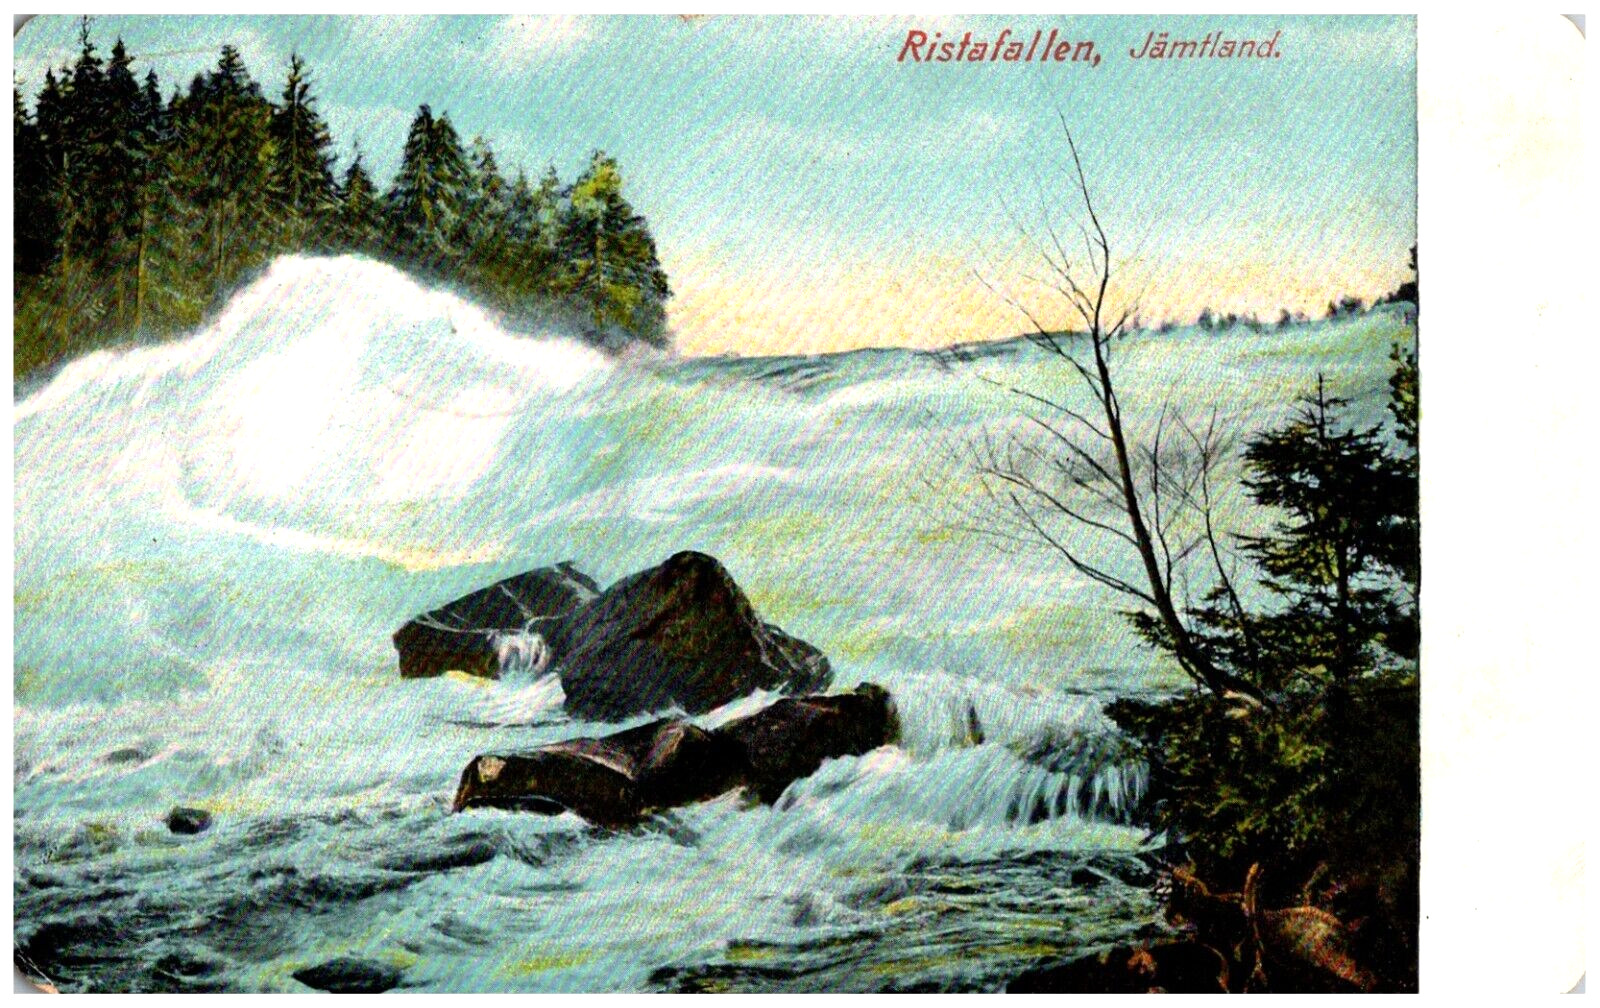 Ristafallen Waterfall Rapids Against the Rocks Jämtland Sweden 1912 Postcard